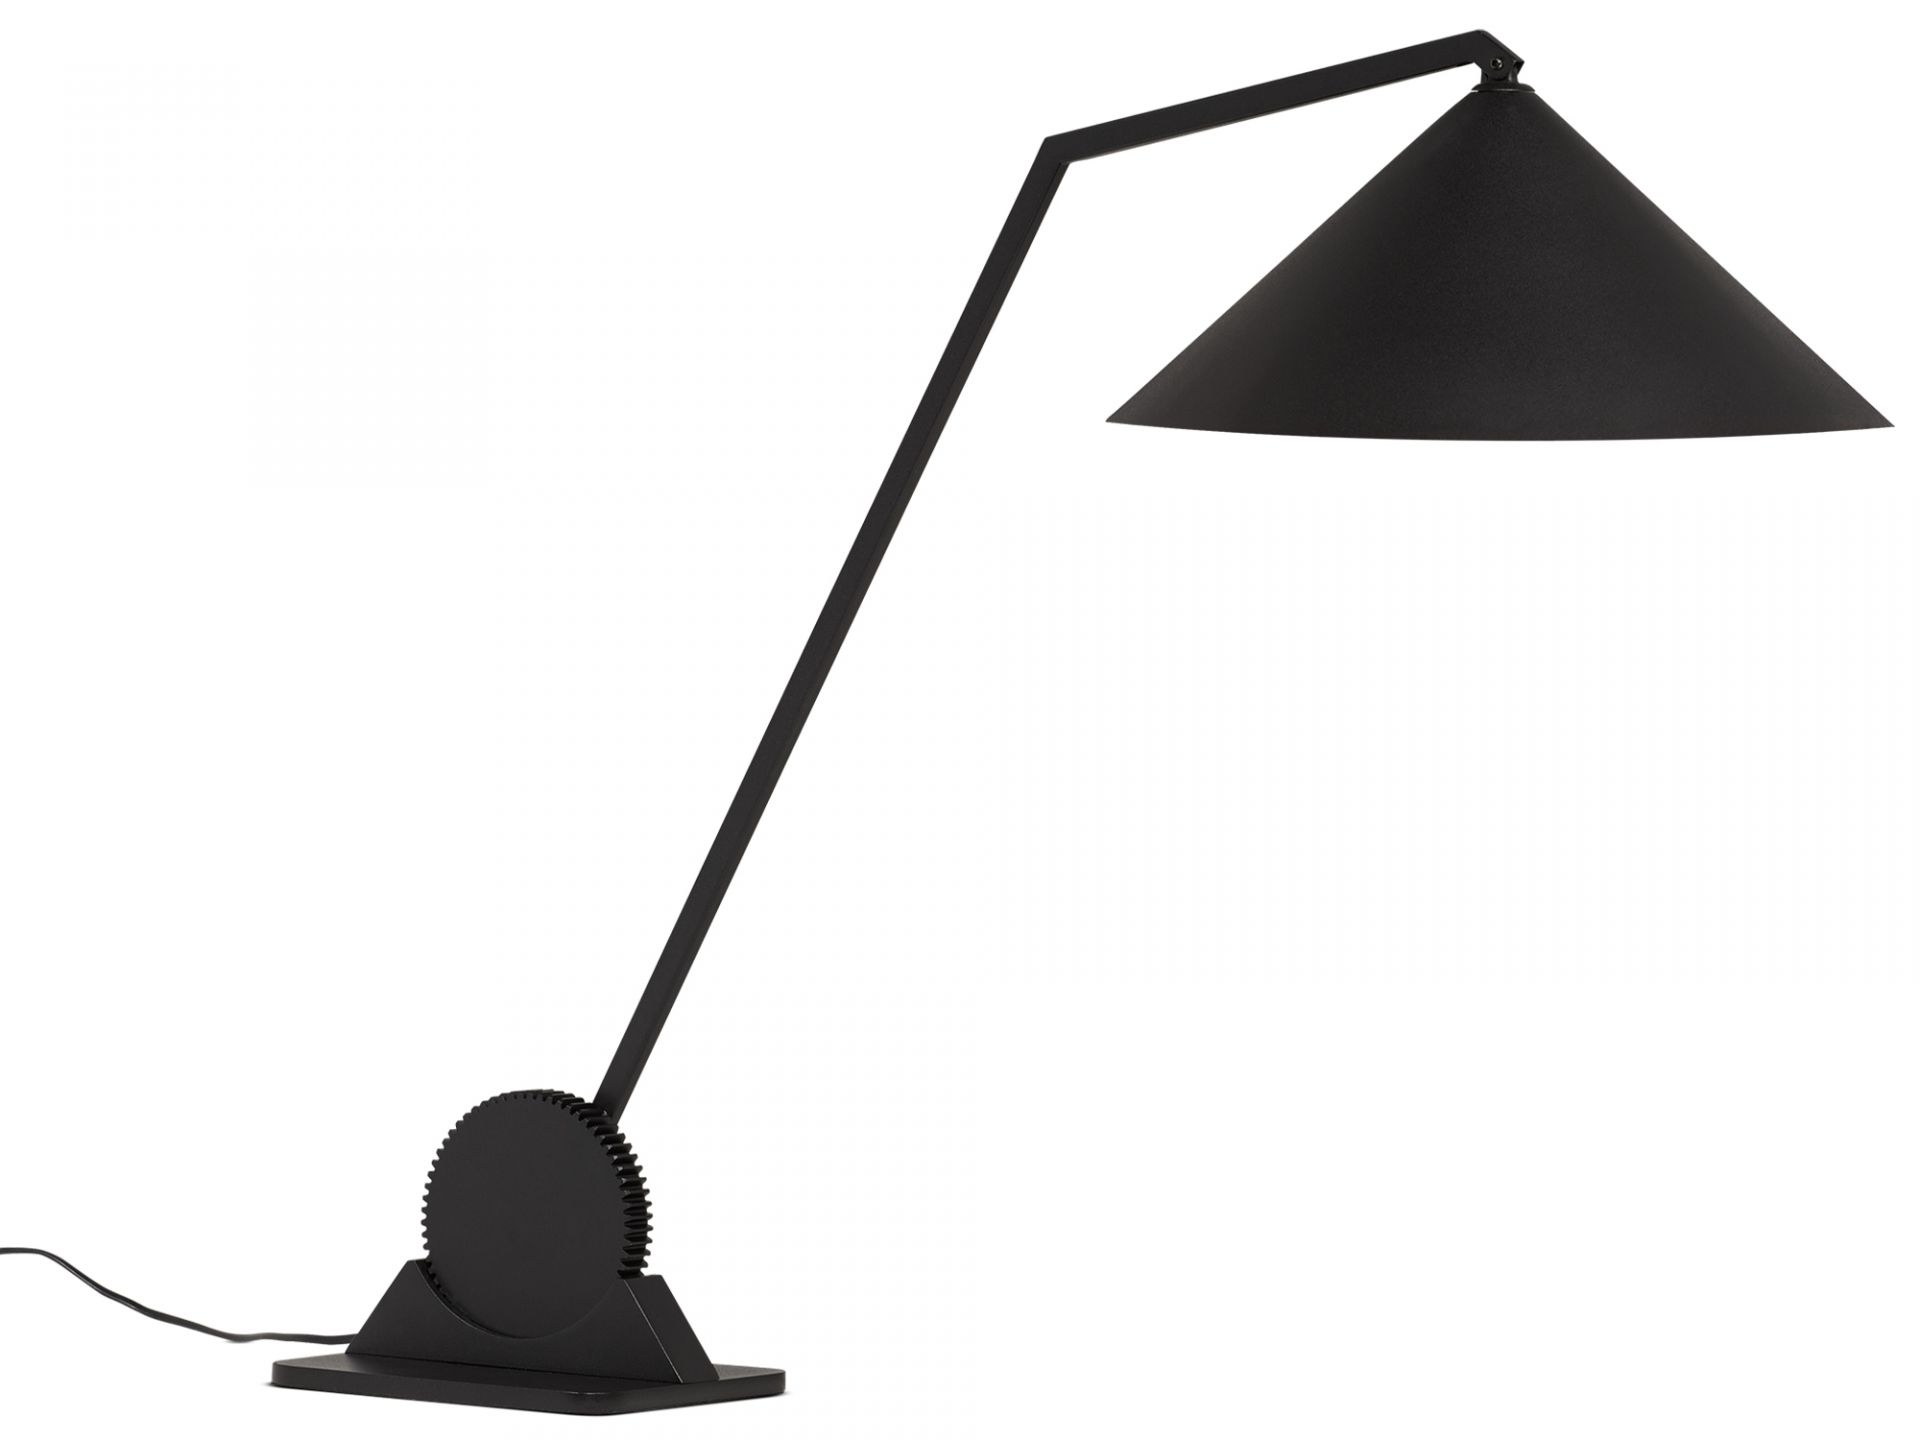 Northern designové stolní lampy Gear Table Single - DESIGNPROPAGANDA